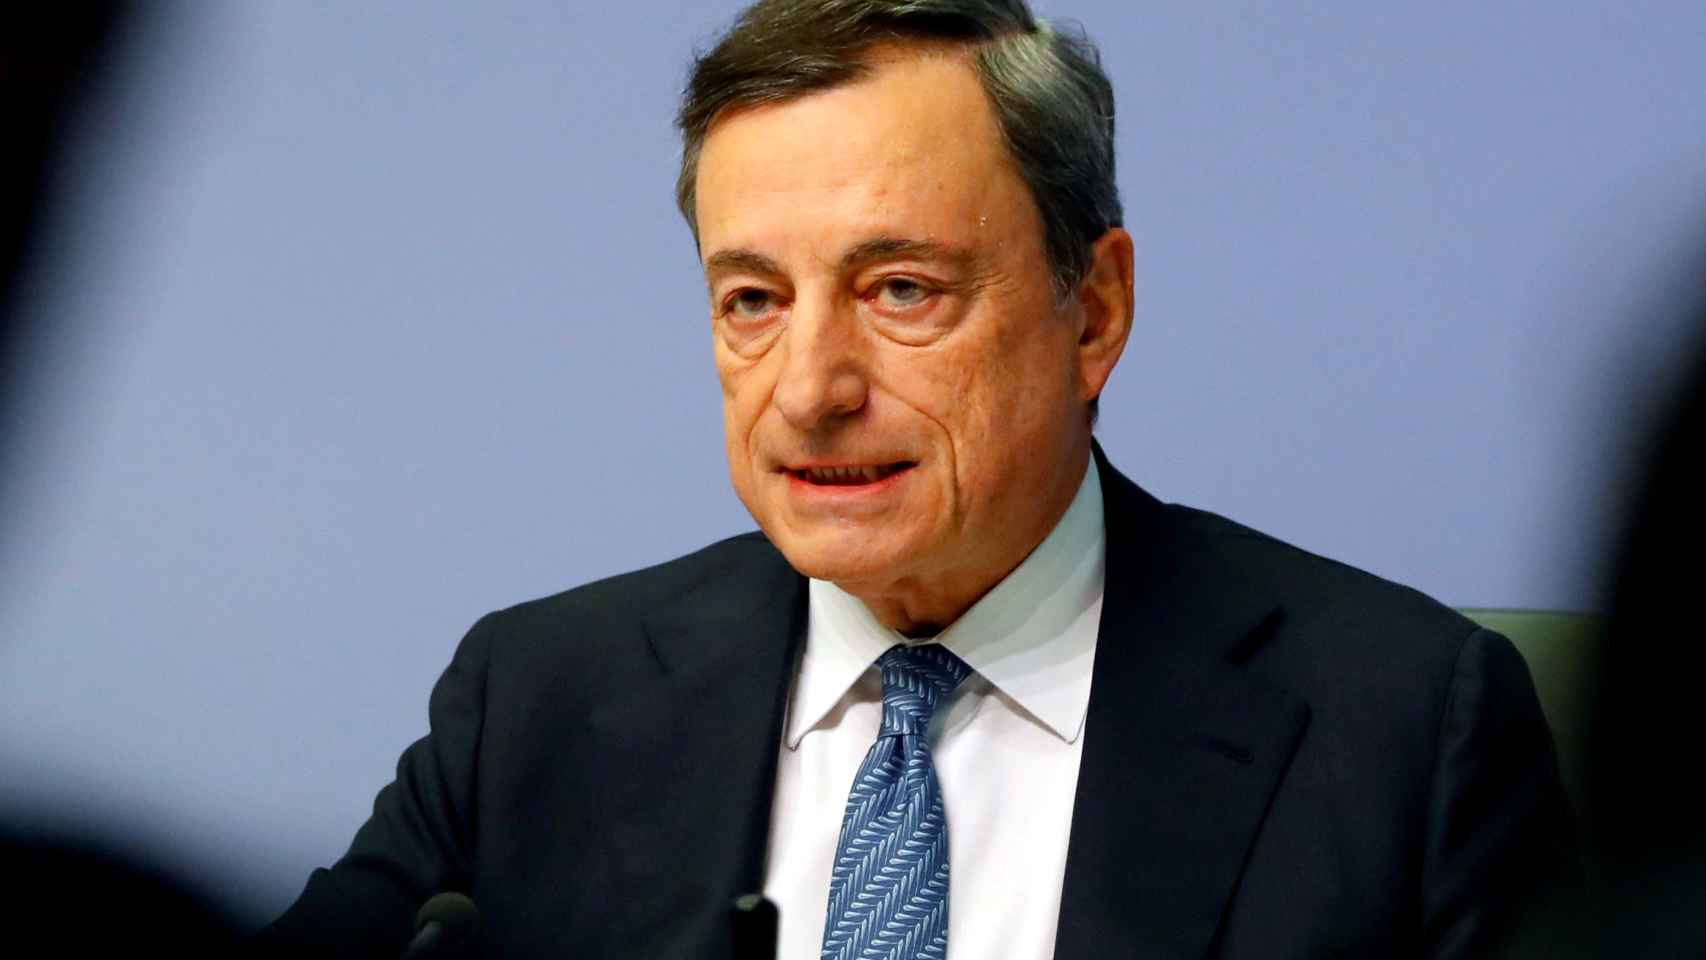 El presidente del BCE, Mario Draghi, durante una rueda de prensa